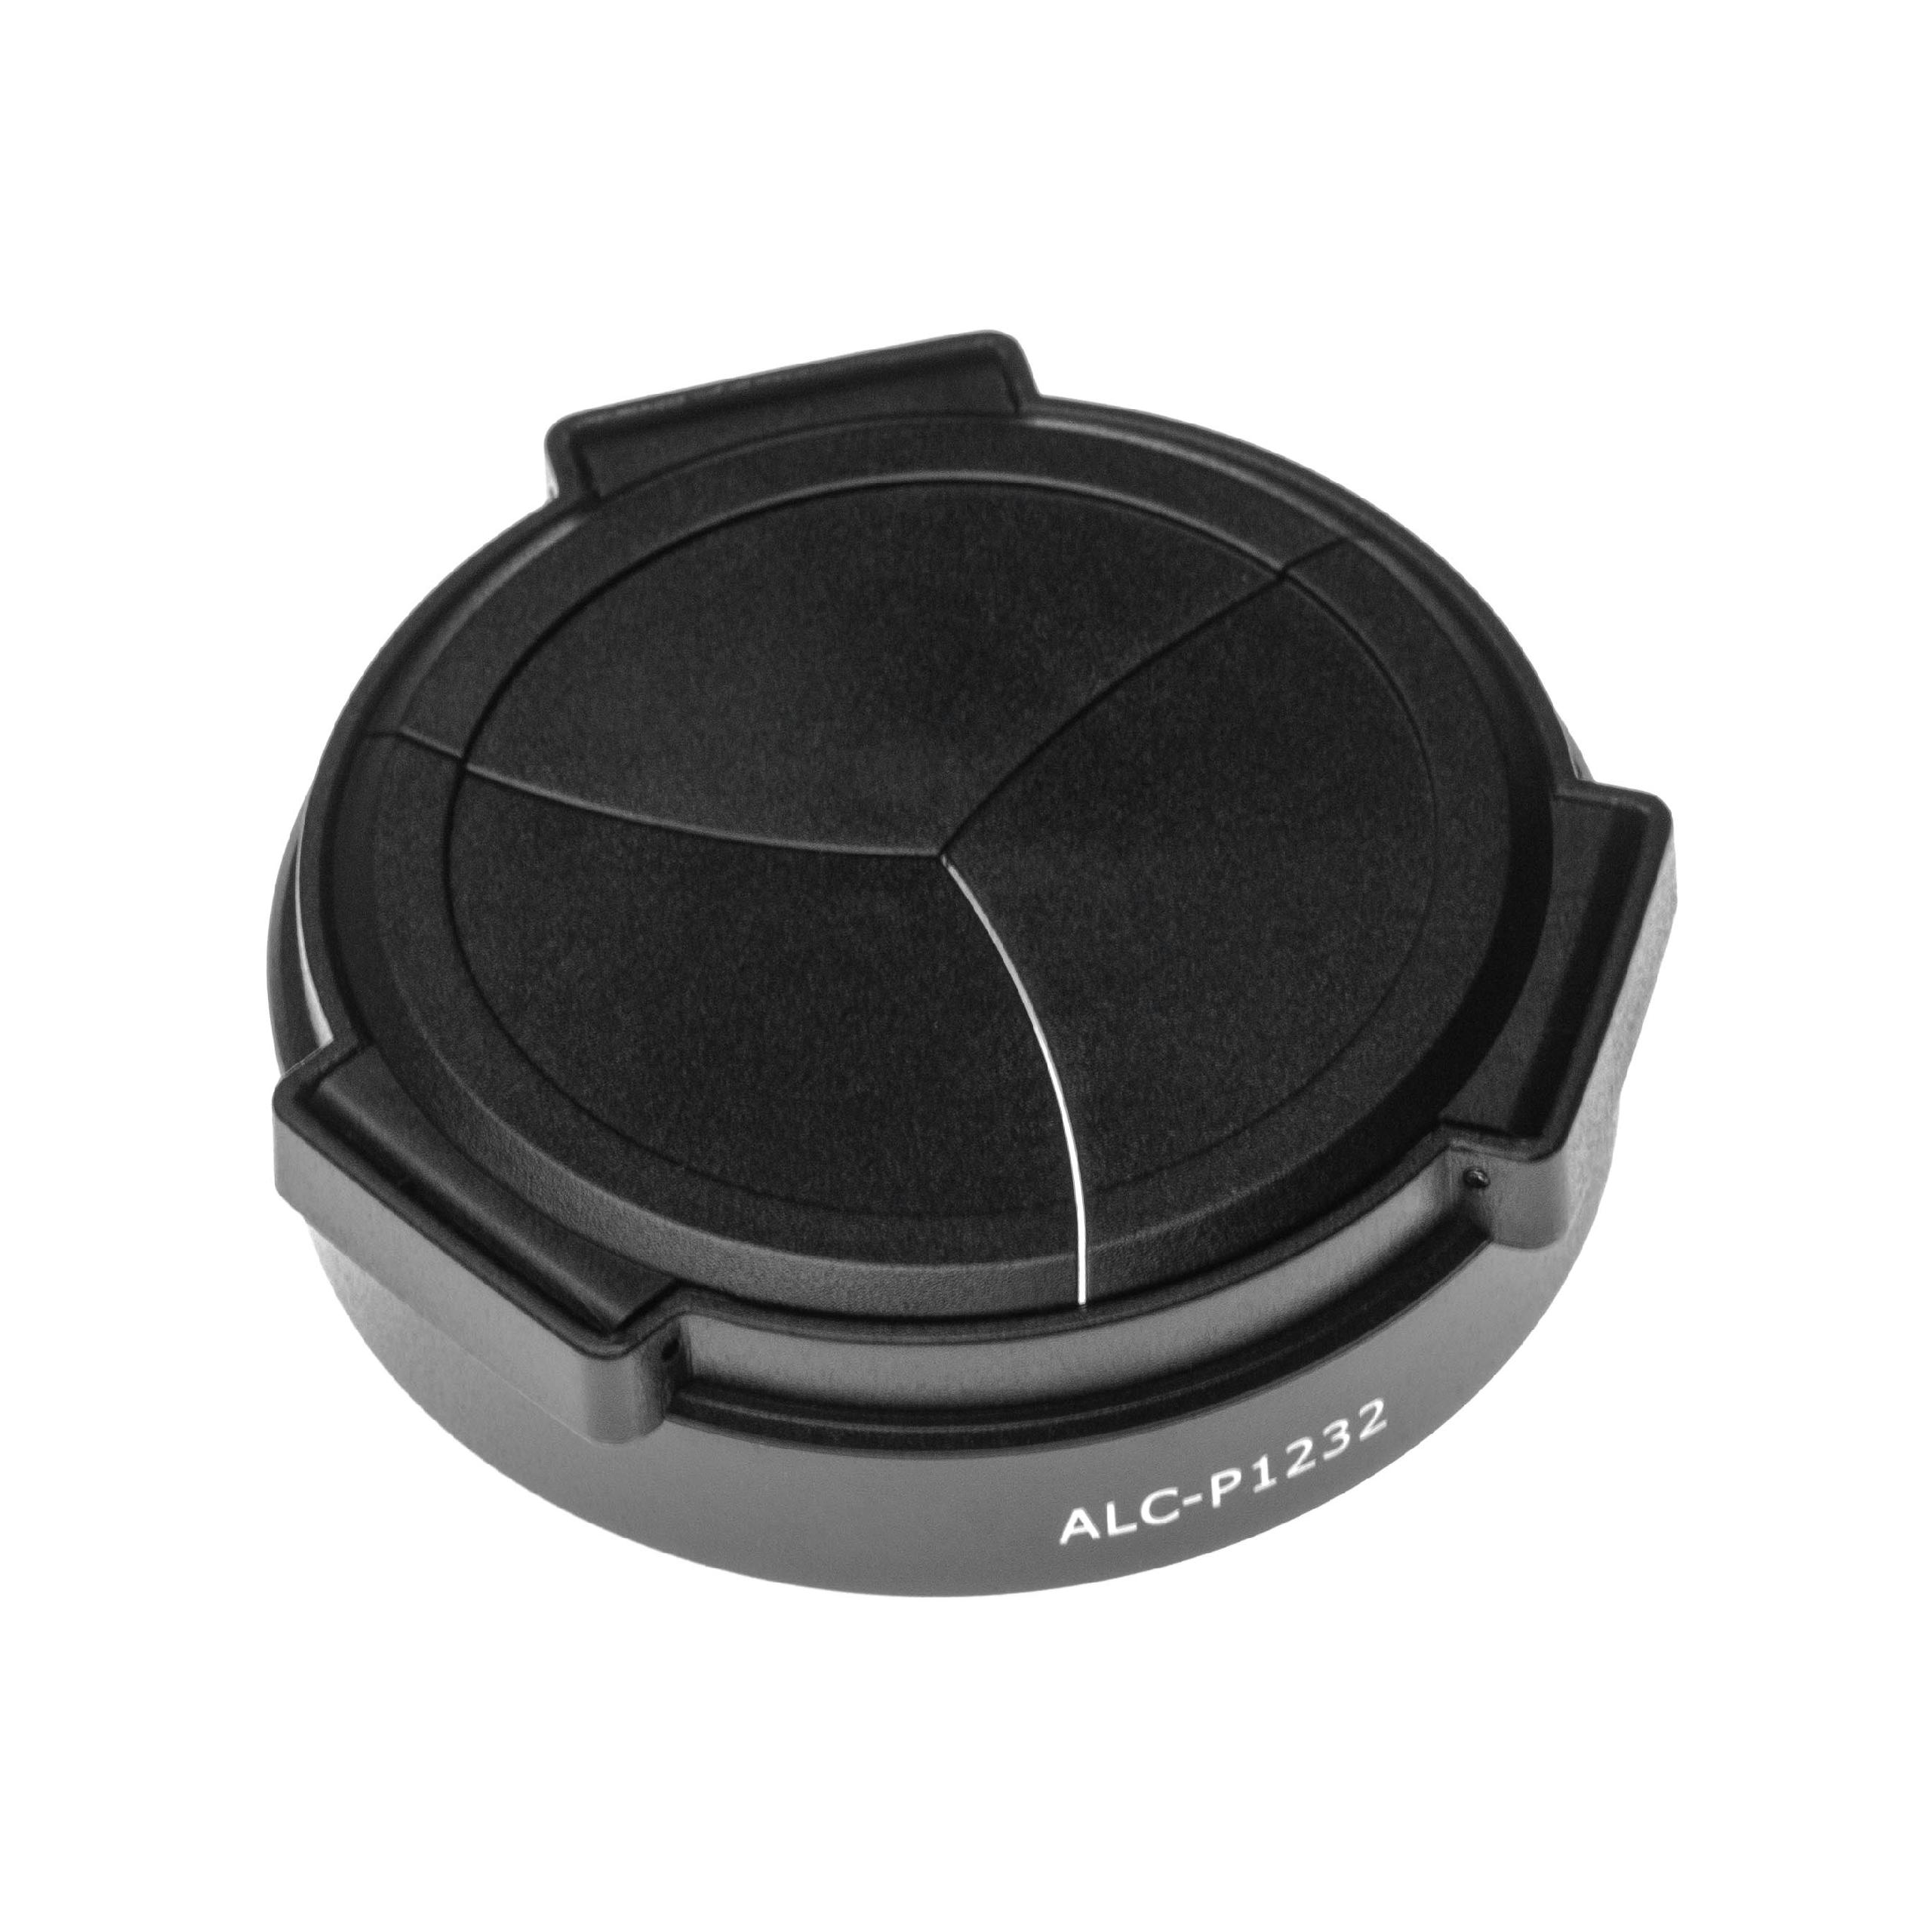 Tapa objetivo automático reemplaza ALC-P1232 Black para cámara Panasonic - plástico negro